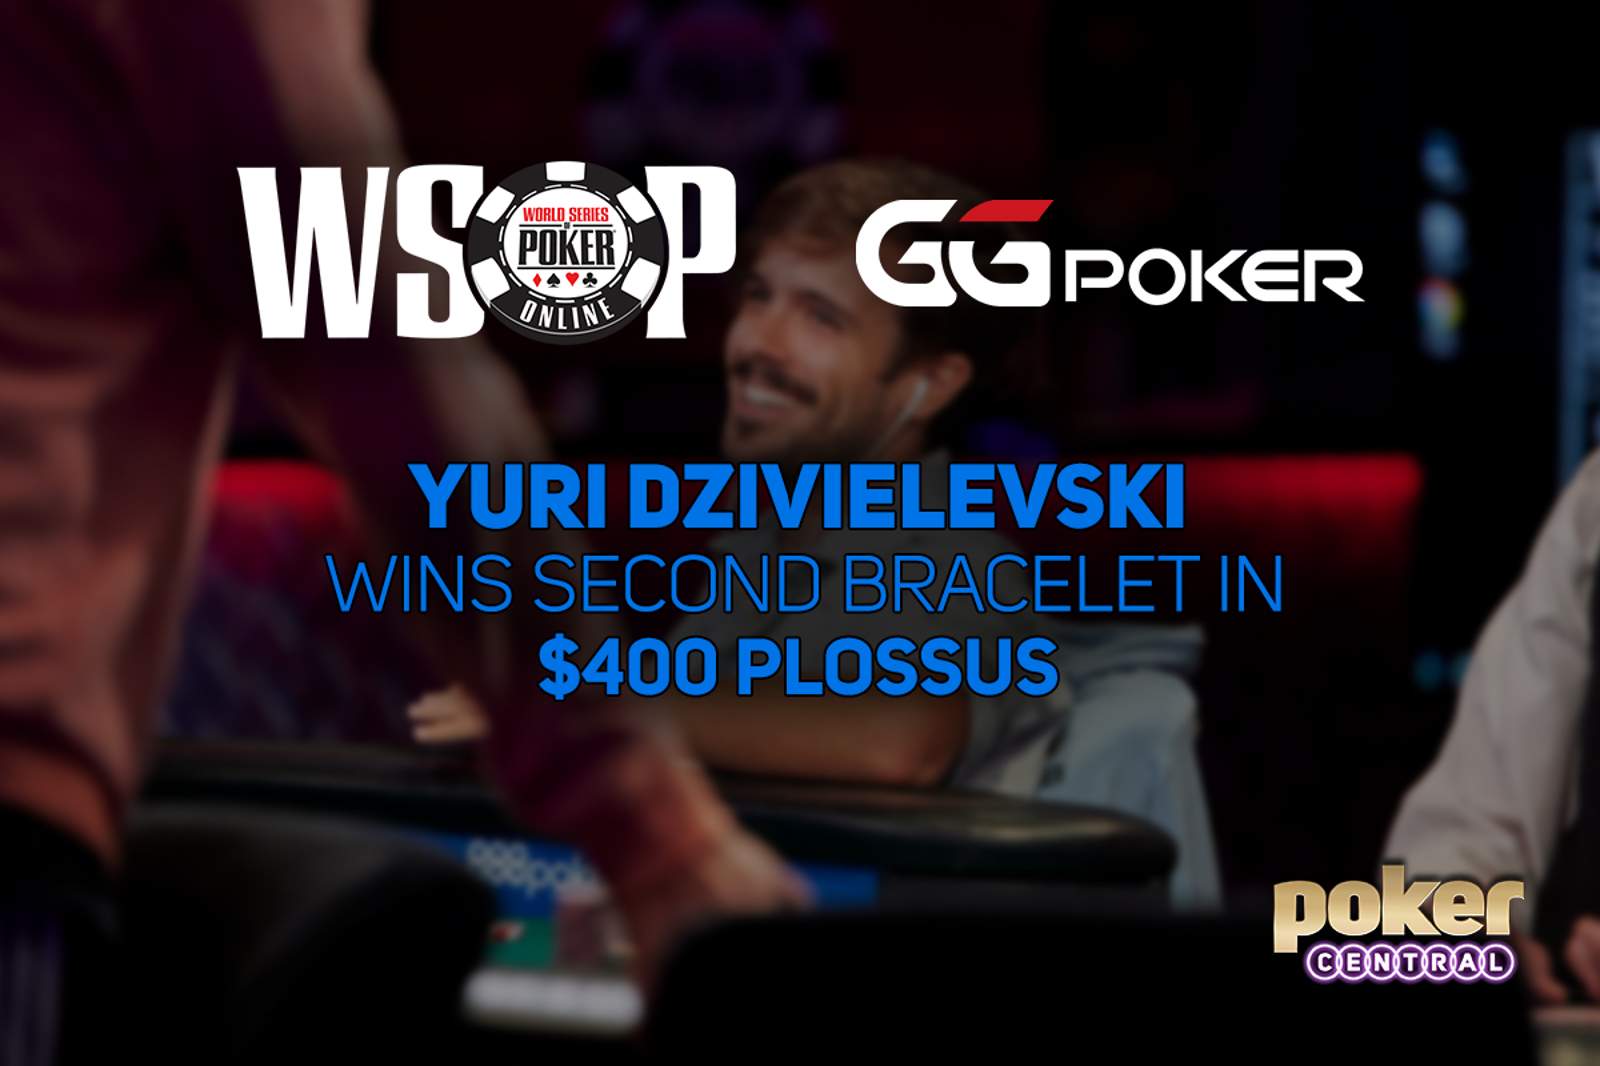 Yuri Dzivielevski Wins Second Bracelet in GGPoker WSOP Online $400 PLOSSUS for $221,557